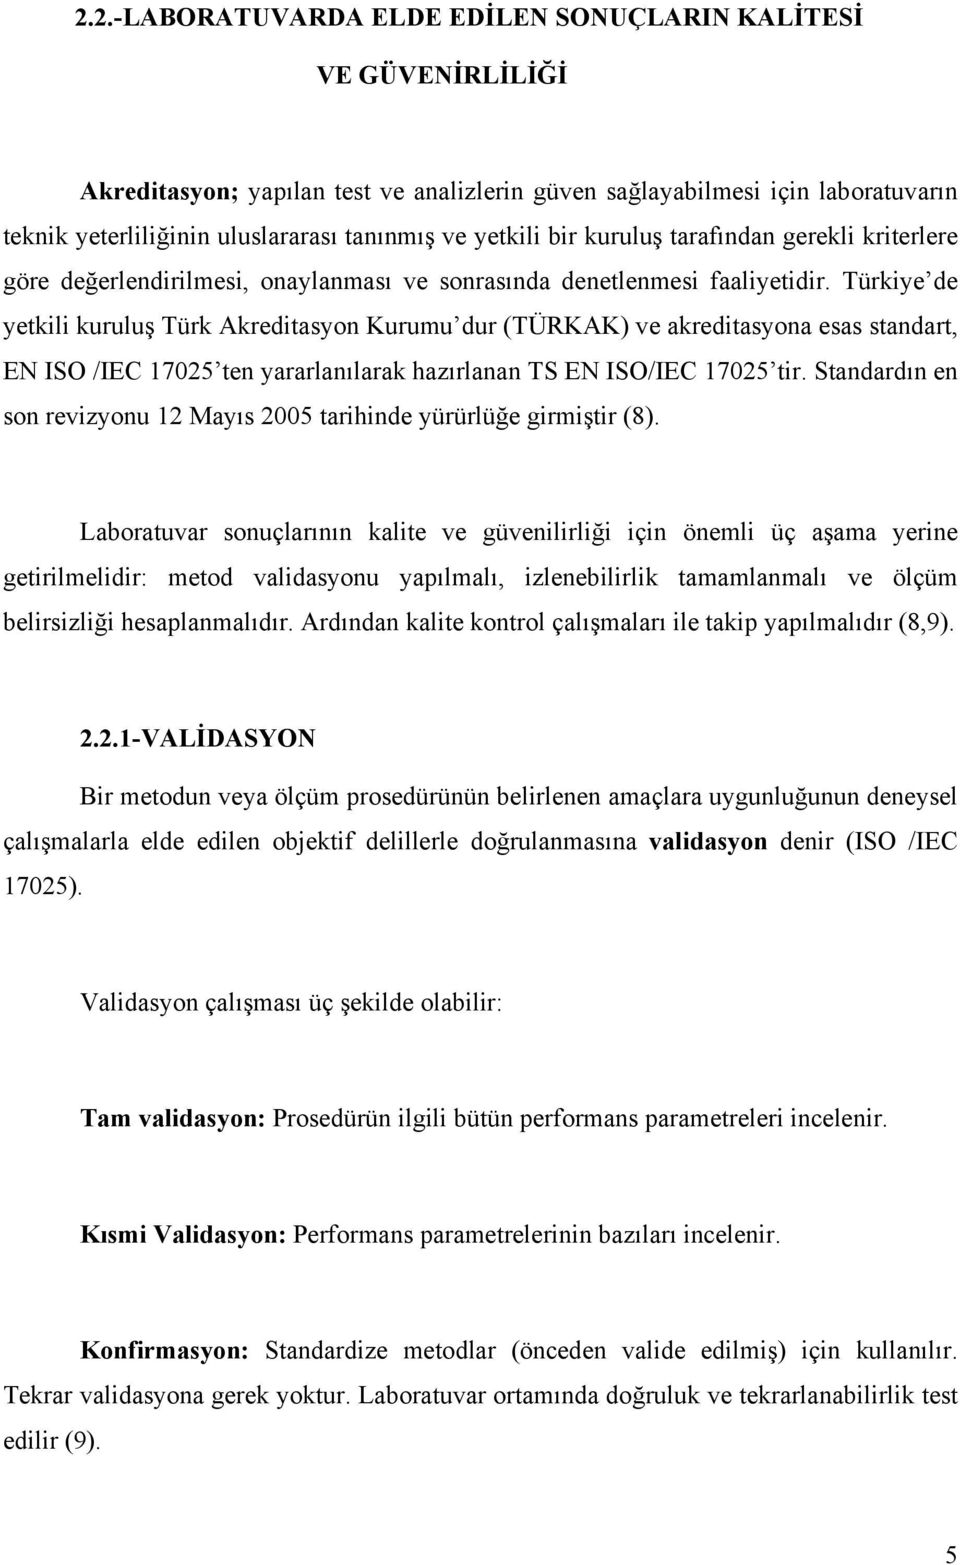 Türkiye de yetkili kuruluş Türk Akreditasyon Kurumu dur (TÜRKAK) ve akreditasyona esas standart, EN ISO /IEC 1705 ten yararlanılarak hazırlanan TS EN ISO/IEC 1705 tir.